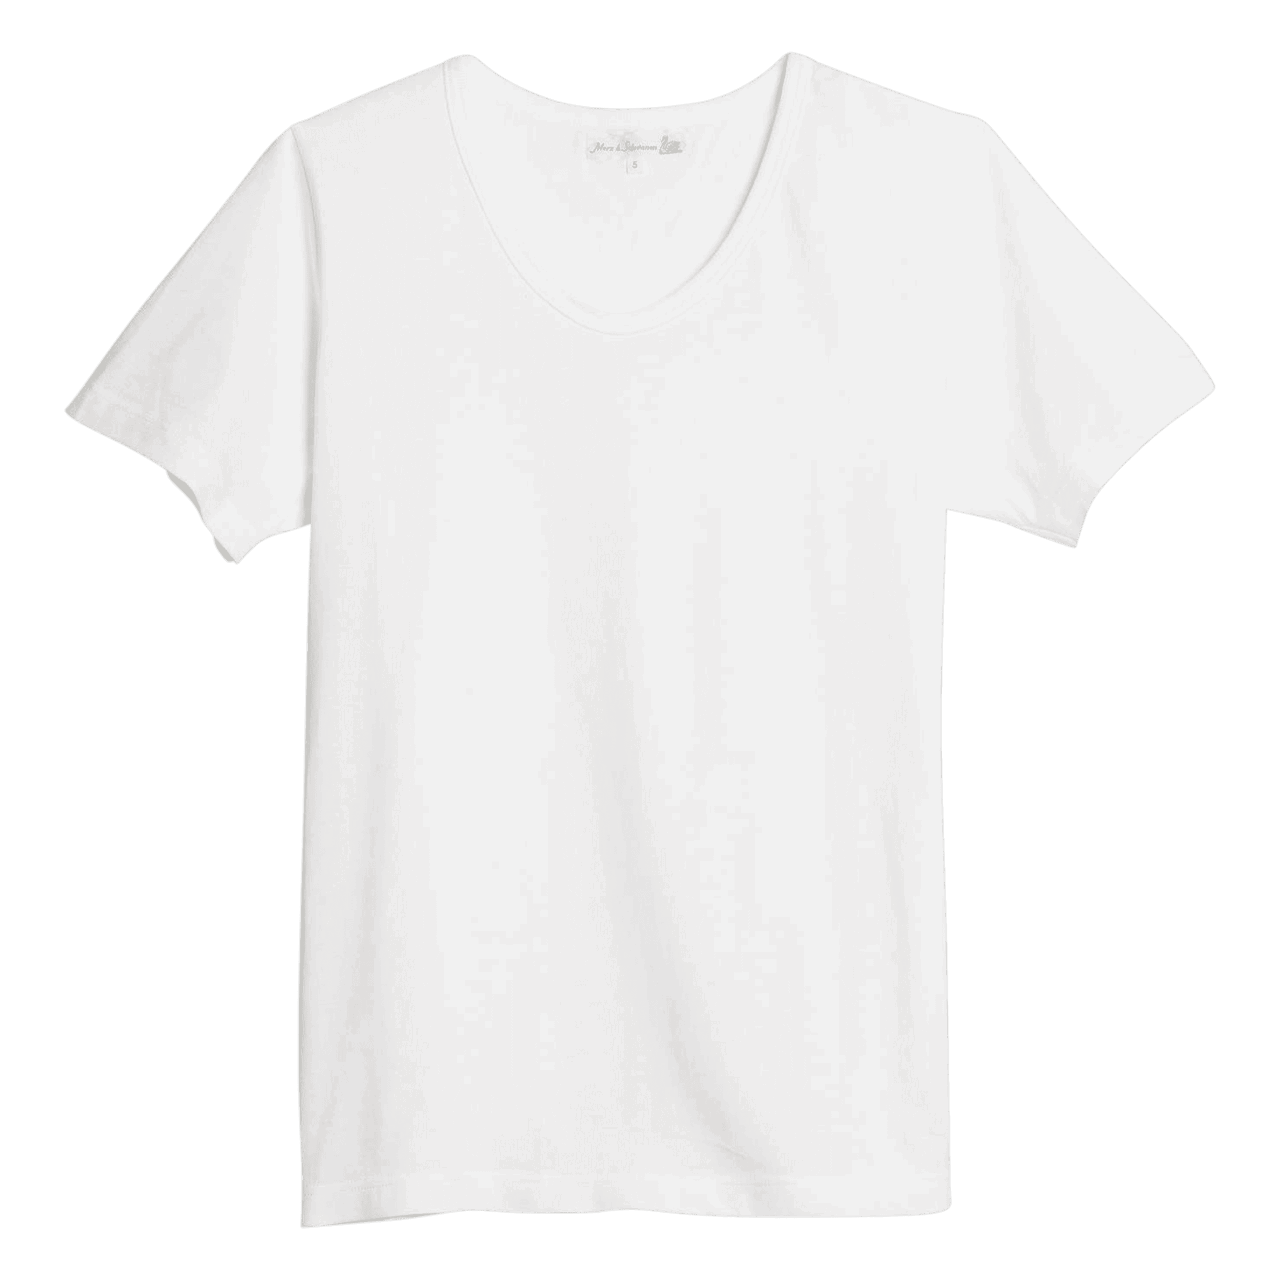 Merz b. Schwanen G.O. 1970's T-Shirt - white